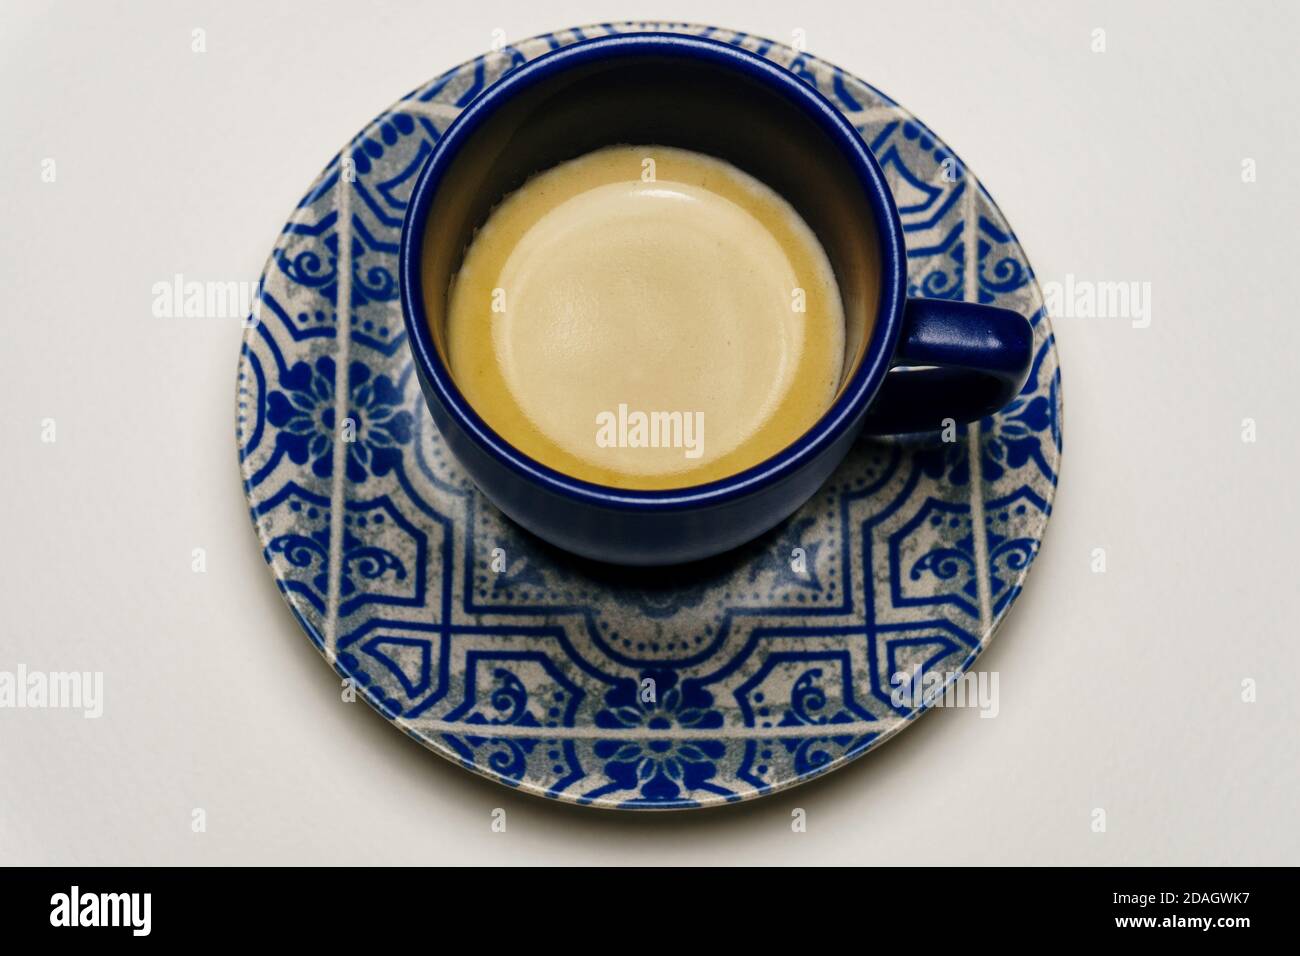 Espresso coffee in a blue espresso cup Stock Photo